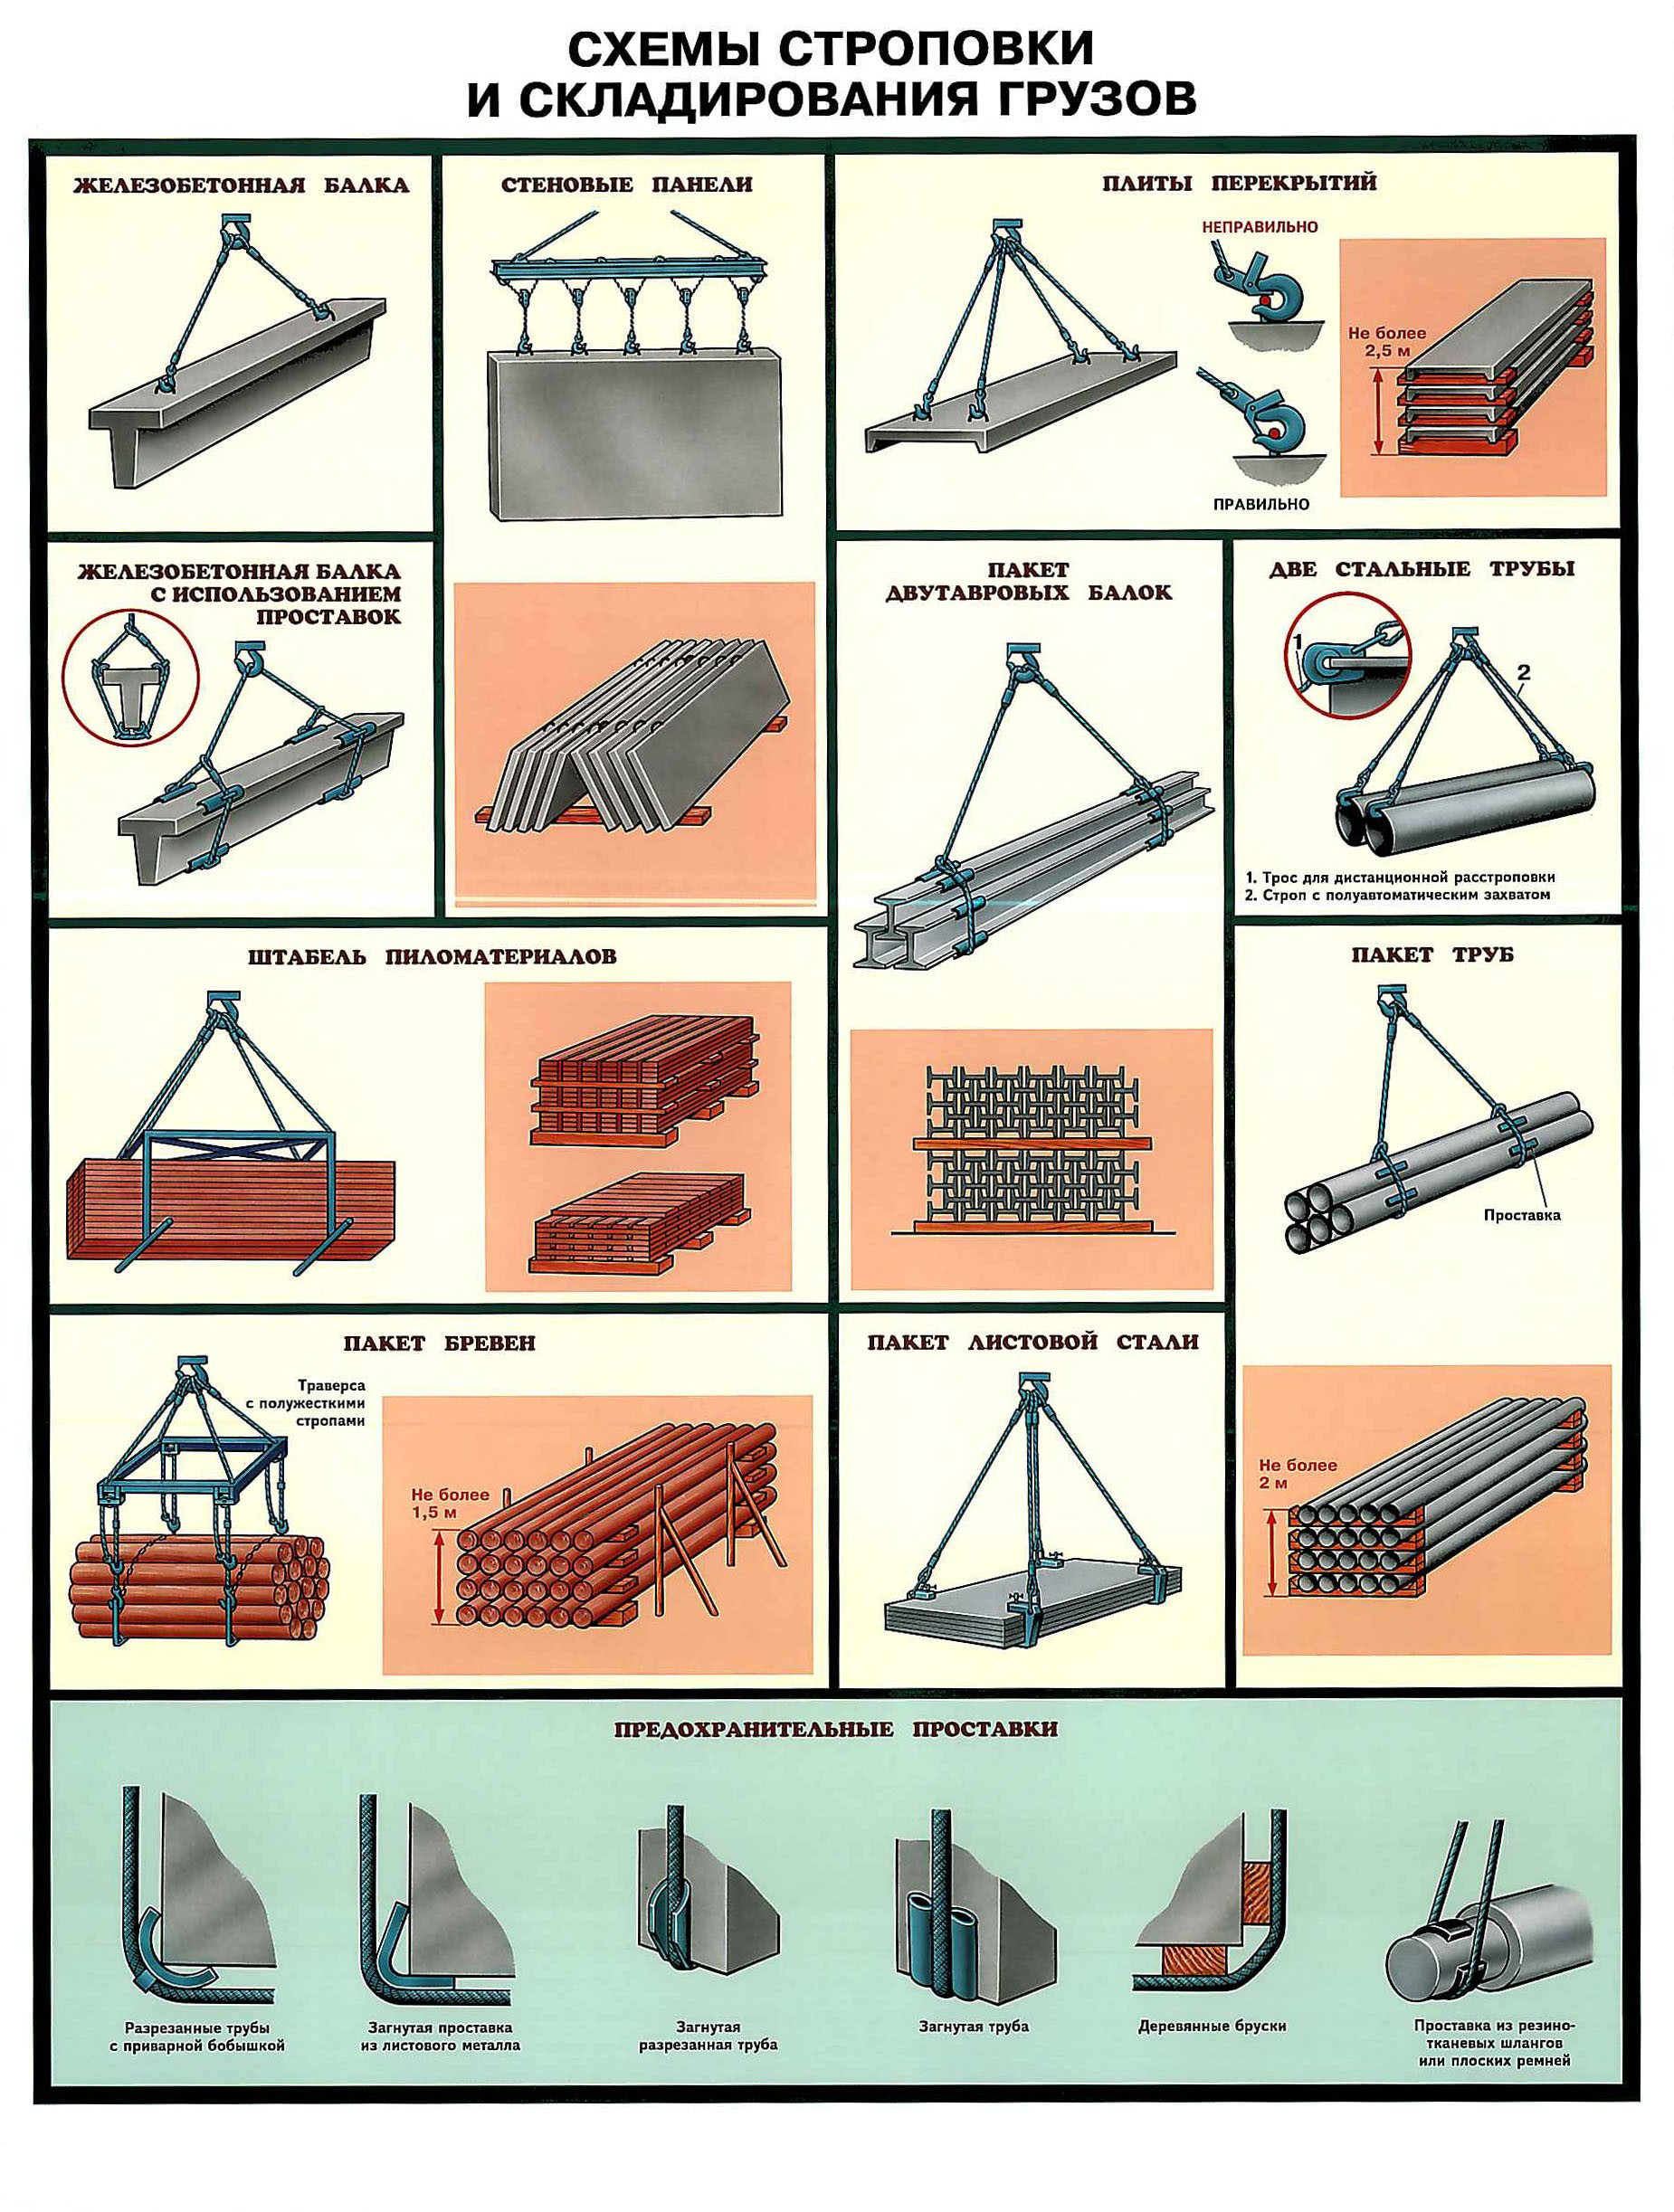 2549 Основные схемы строповки и складирования материалов и изделий